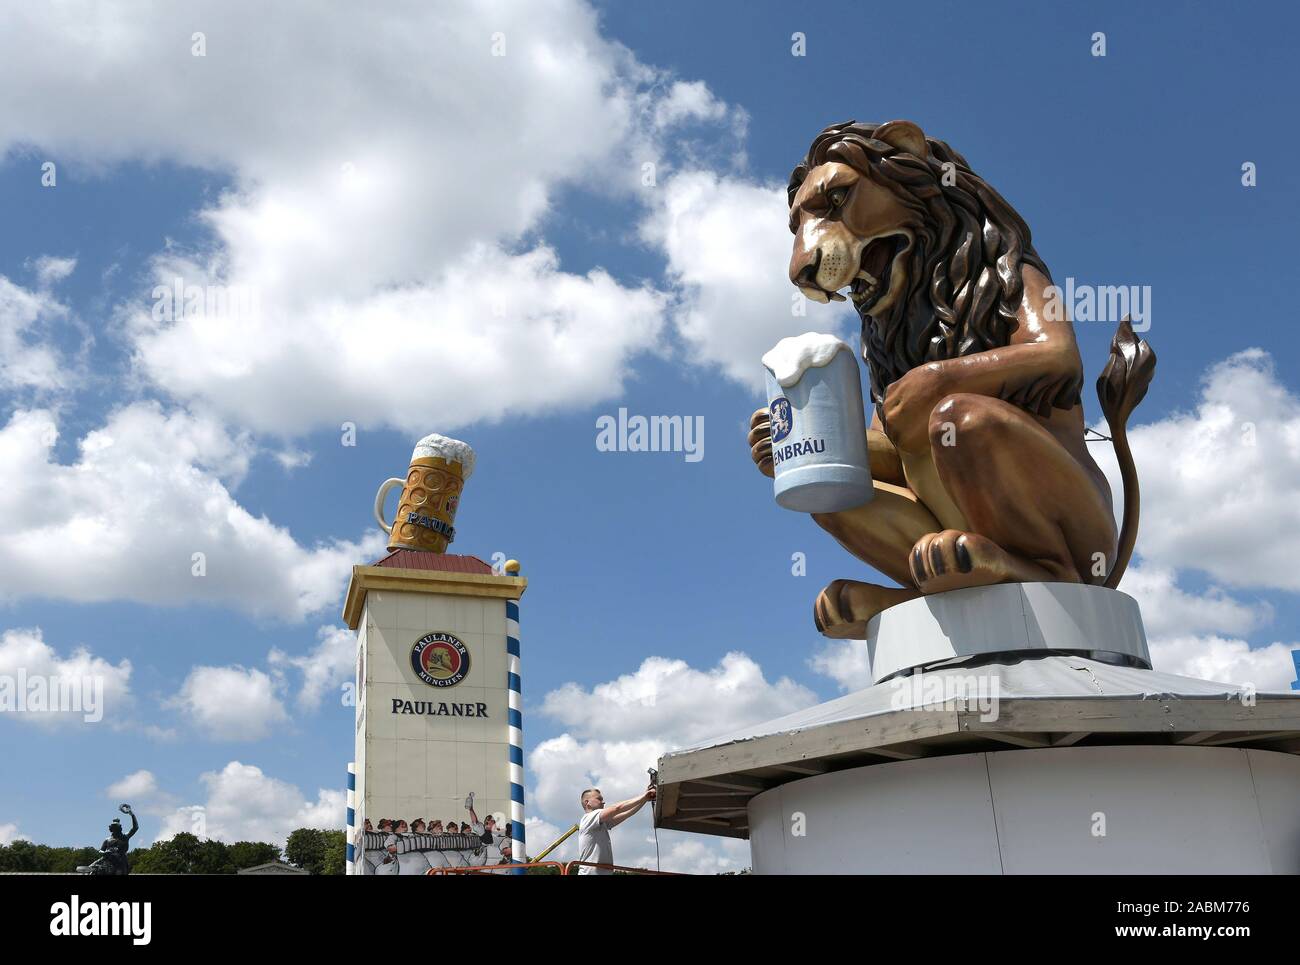 Set-up für das Oktoberfest 2019. Auf der rechten Seite eine übergroße Löwe Abbildung von Löwenbräu Bier trinken, wirbt im Hintergrund Paulaner Werbung erkennbar. [Automatisierte Übersetzung] Stockfoto